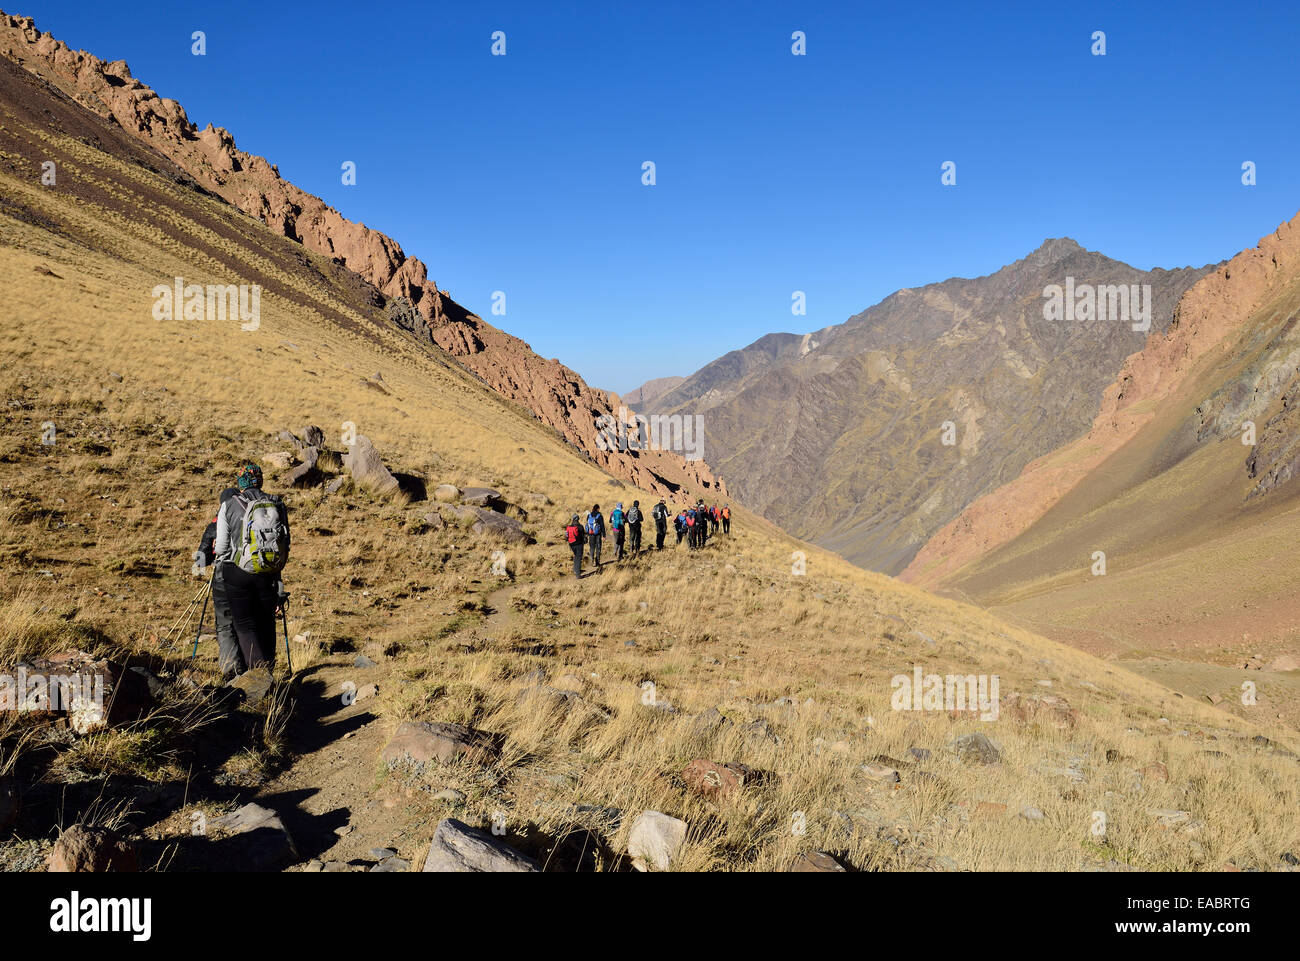 Iran Mazandaran Province Alborz Mountains Alam Kuh area Takht-e Suleyman Massif group of people hiking on Hezarsham plateau Stock Photo